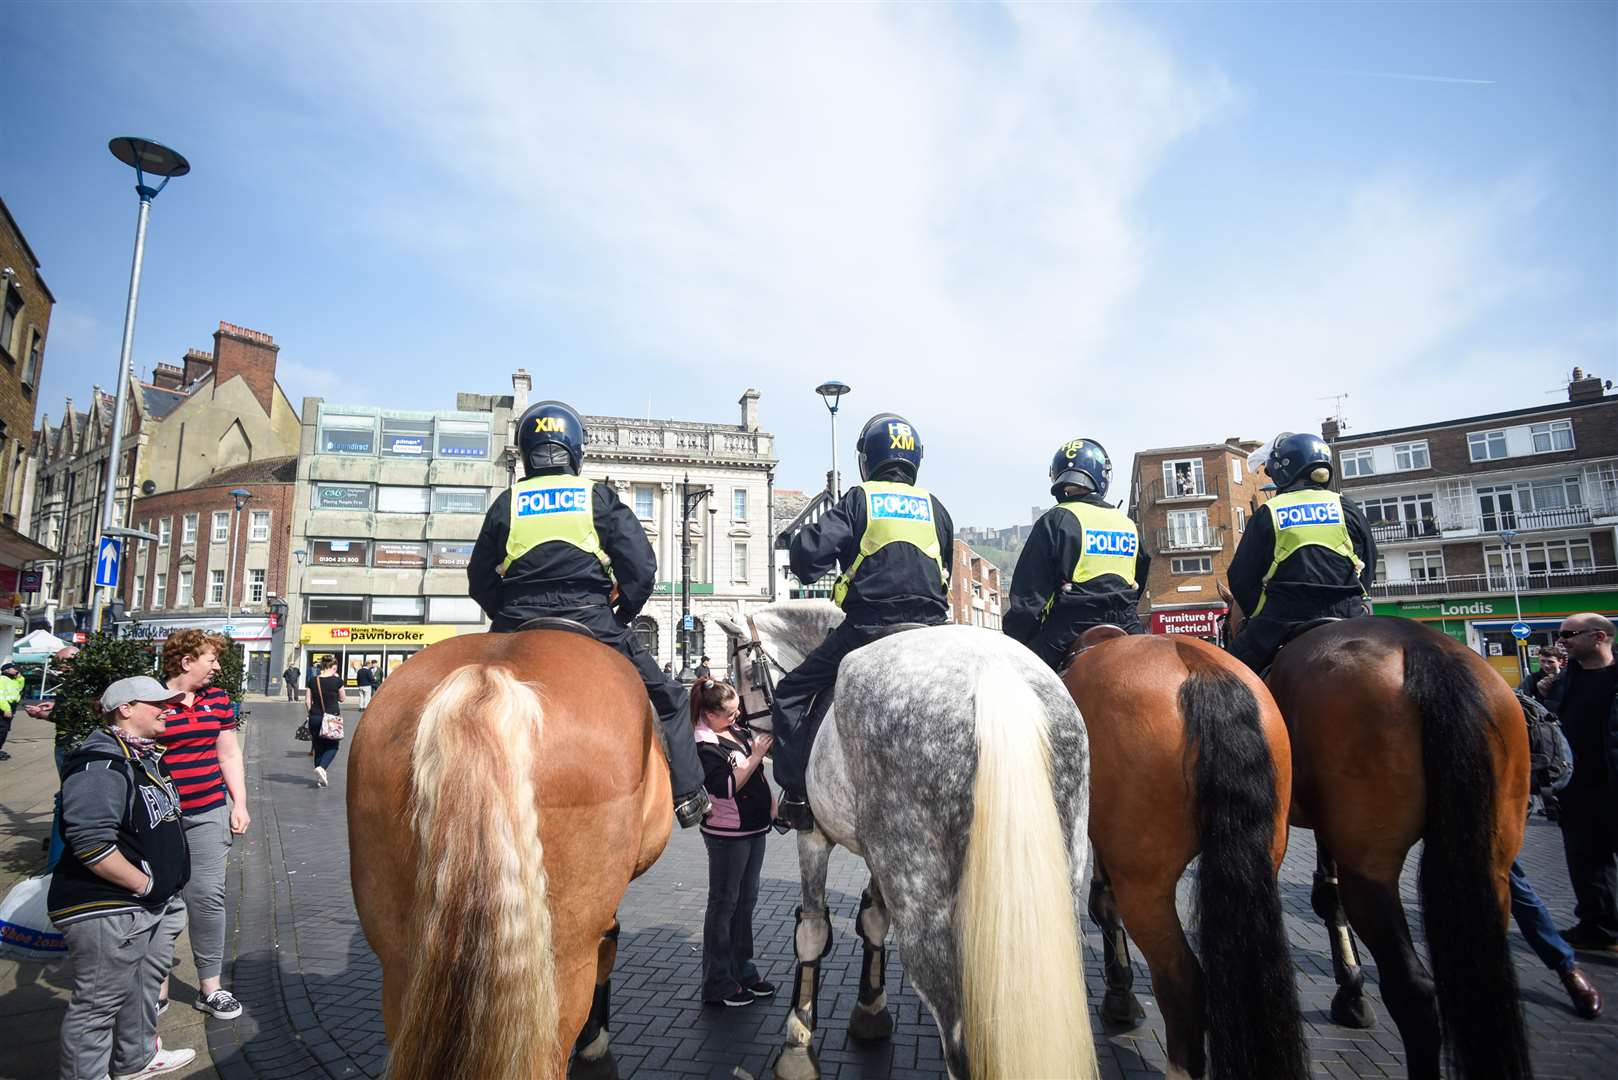 Police horses in Market Square